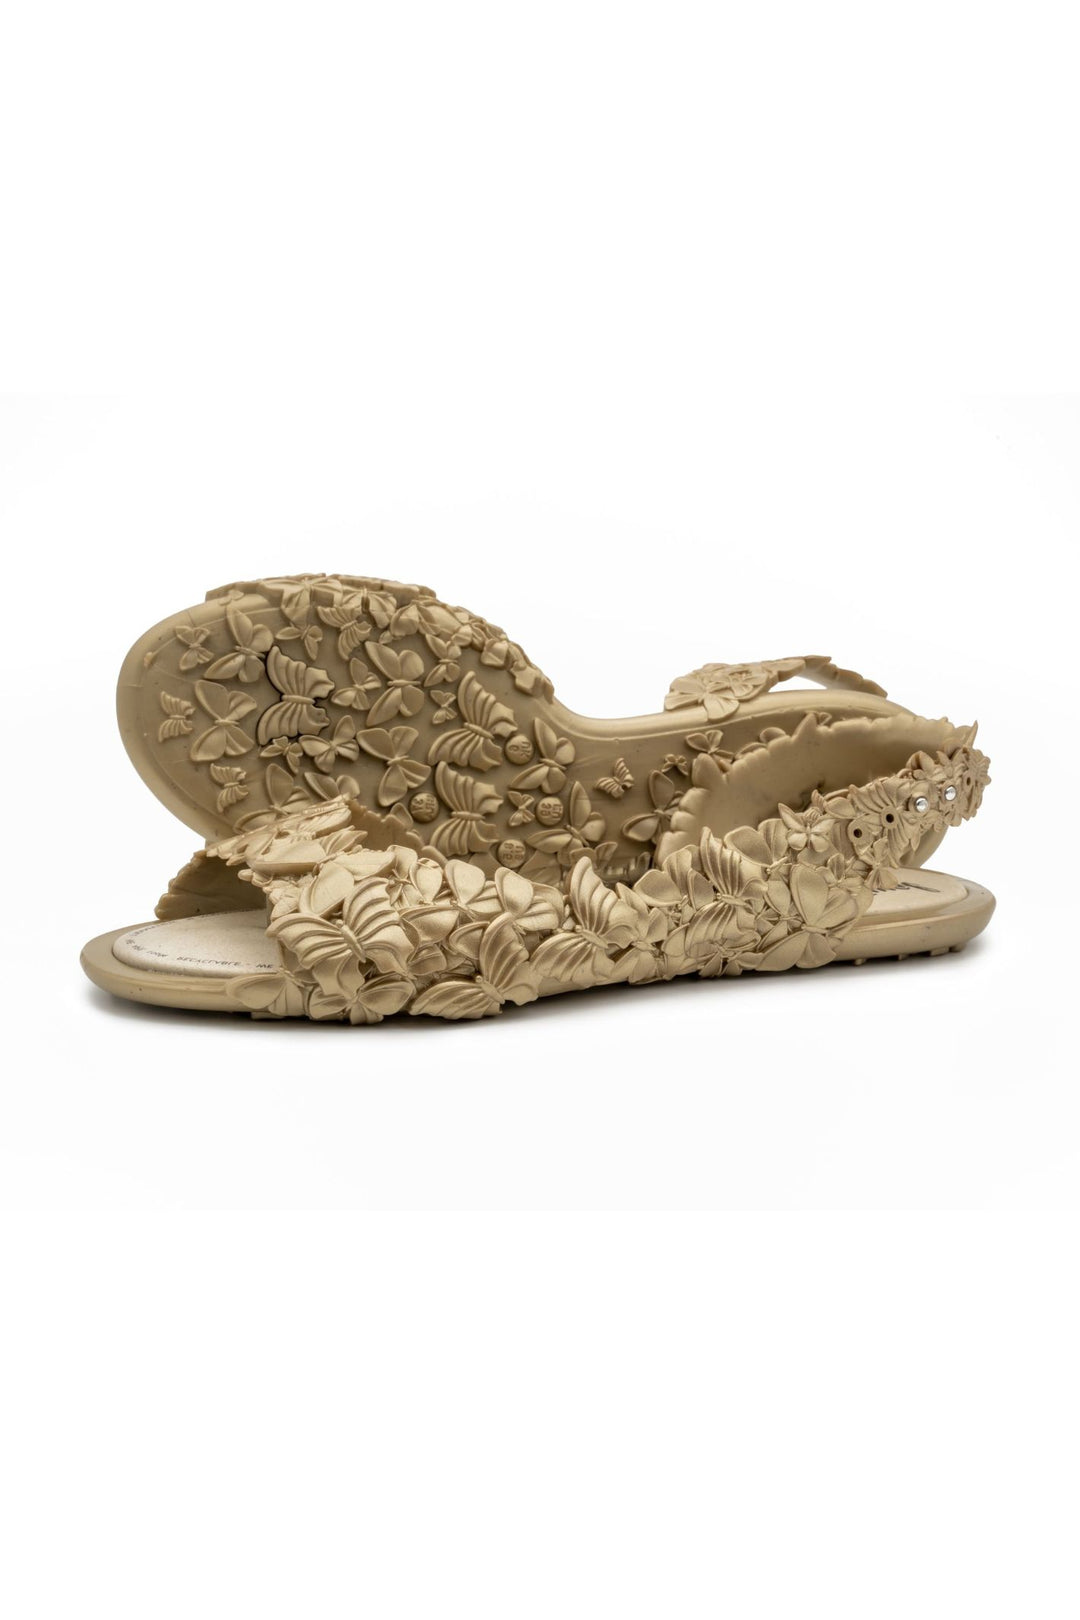 Sunies Metallic Gold Flexi Butterfly Sandals